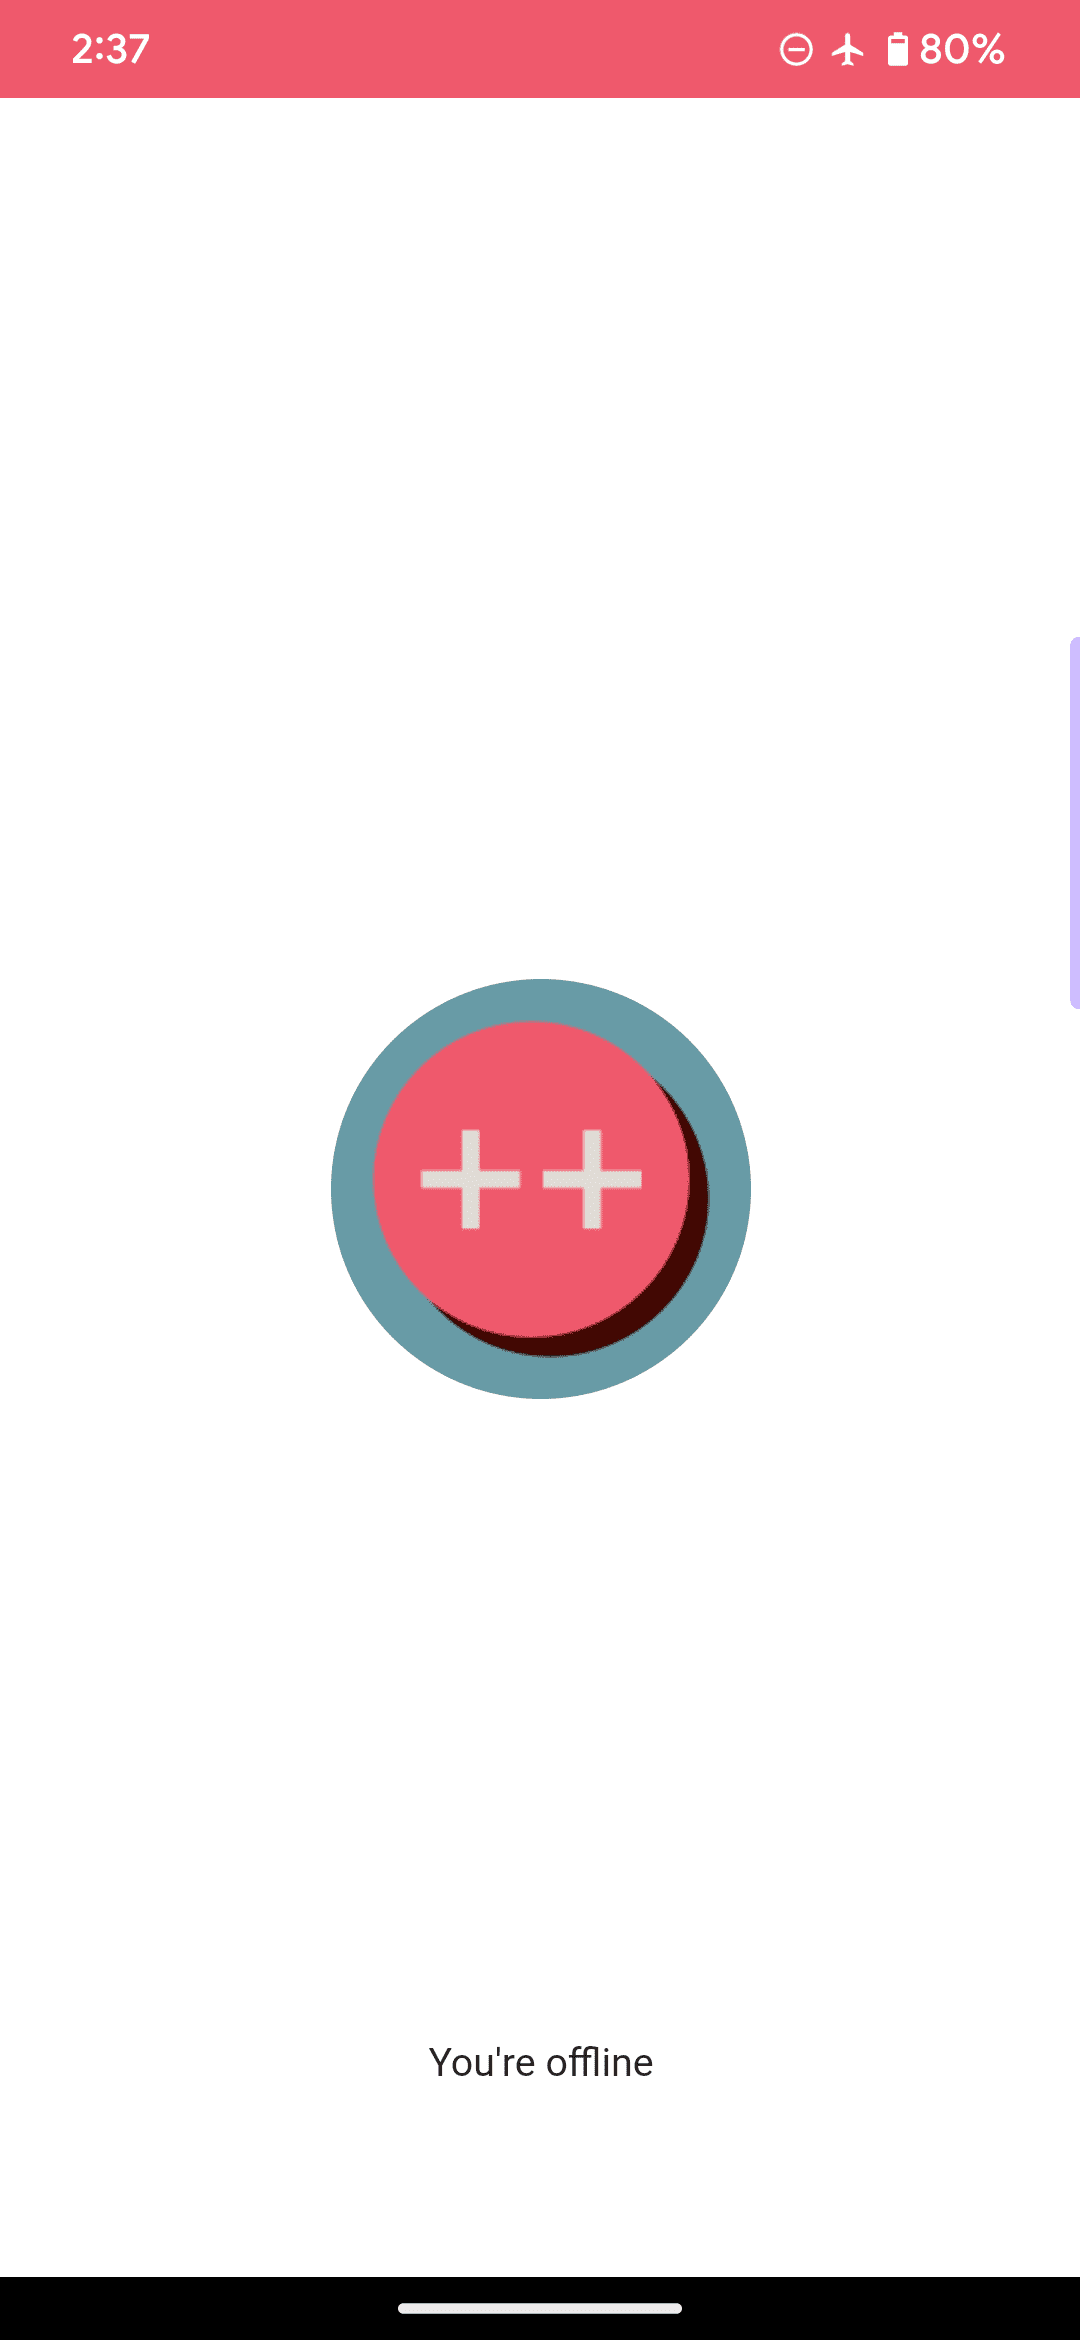 De standaard offlinepagina voor een voorbeeldwebapp, waarbij het logo bestaat uit een roze cirkel en twee plustekens, en de boodschap 'je bent offline' bevat.